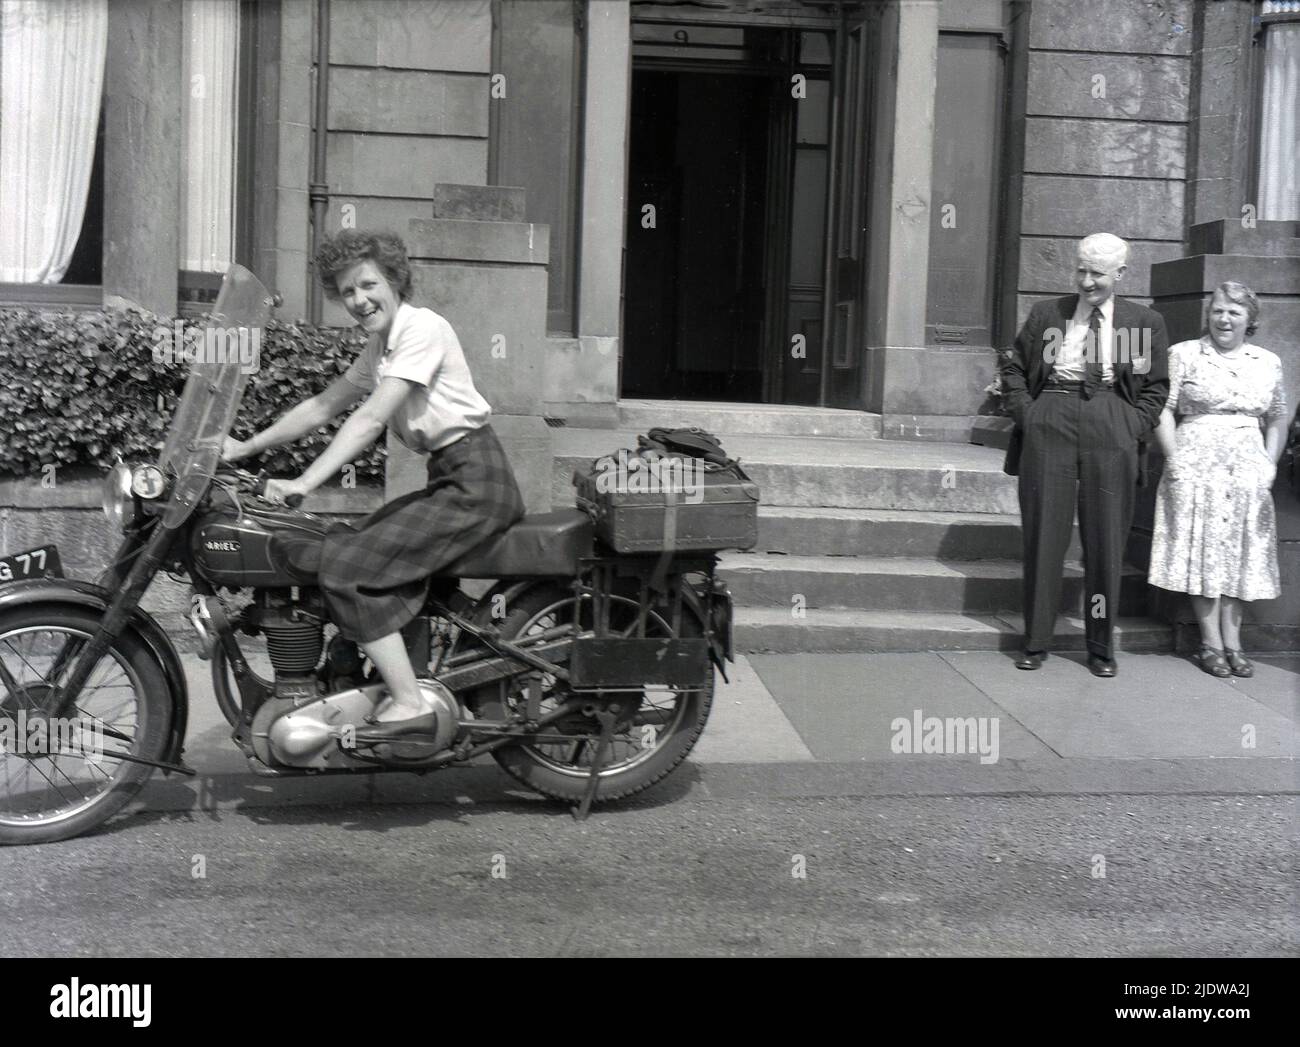 1956, historisch, eine Dame in einem Tartanrock, die auf einem Ariel-Motorrad der damaligen Zeit vor einem Hoteleingang in der Nähe von Mallaig, schottischen Highlands, Schottland, Großbritannien, sitzt. Das Motorrad ist ein Ariel 'Square Four', auch bekannt als der 'Squariel'. Entworfen von Edward Turner, der 1928 den ersten „Square Four“-Motor entwickelt hatte, und hergestellt vom Briitsh-Hersteller Ariel Motors Ltd. Aus Birmingham aus dem Jahr 1953, hatte er einen 1000cc 4-Zylinder-Motor - den größten jemals in Großbritannien produzierten - was ihn ideal für Motorradtouren machte. Als die Nachfrage zurückging, wurde die Produktion des Modells 1959 eingestellt. Stockfoto